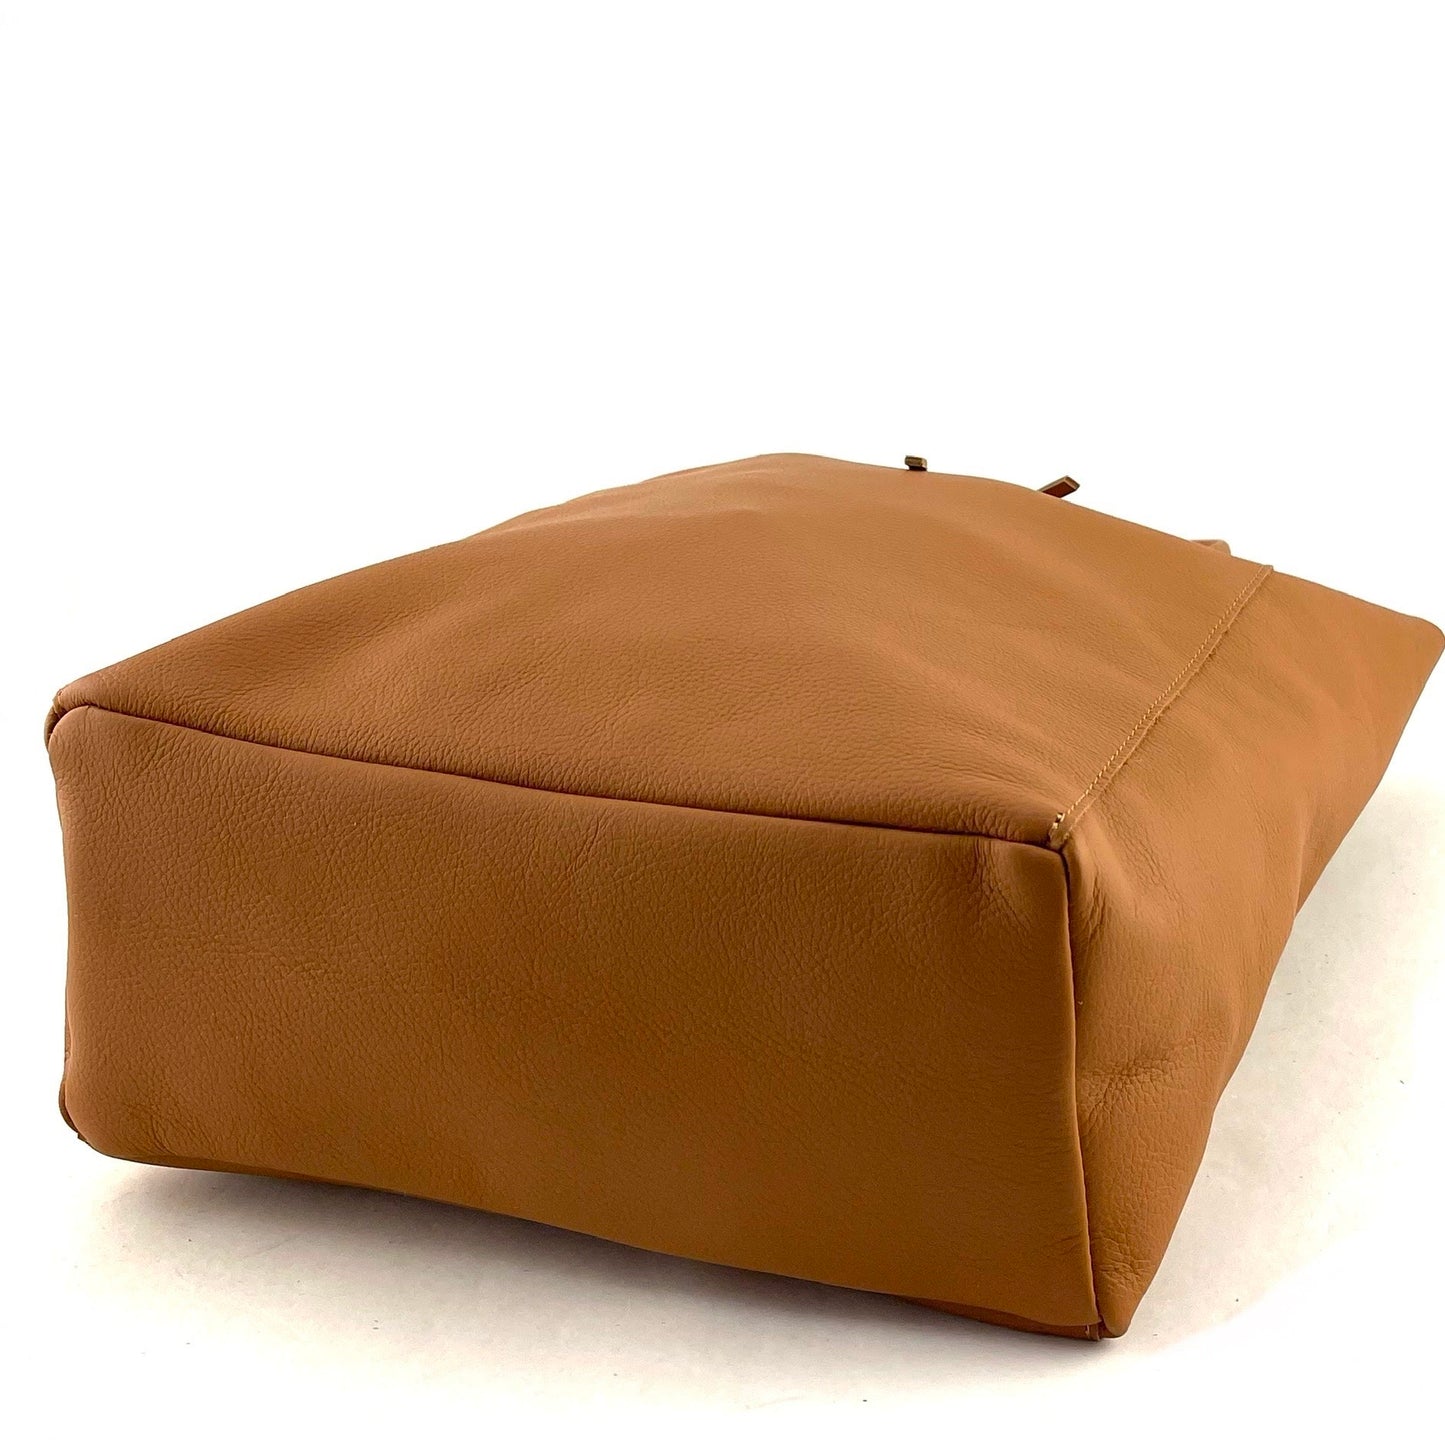 borsa a spalla - SHOPPER BIG - tote bag genuine leather - cuoio